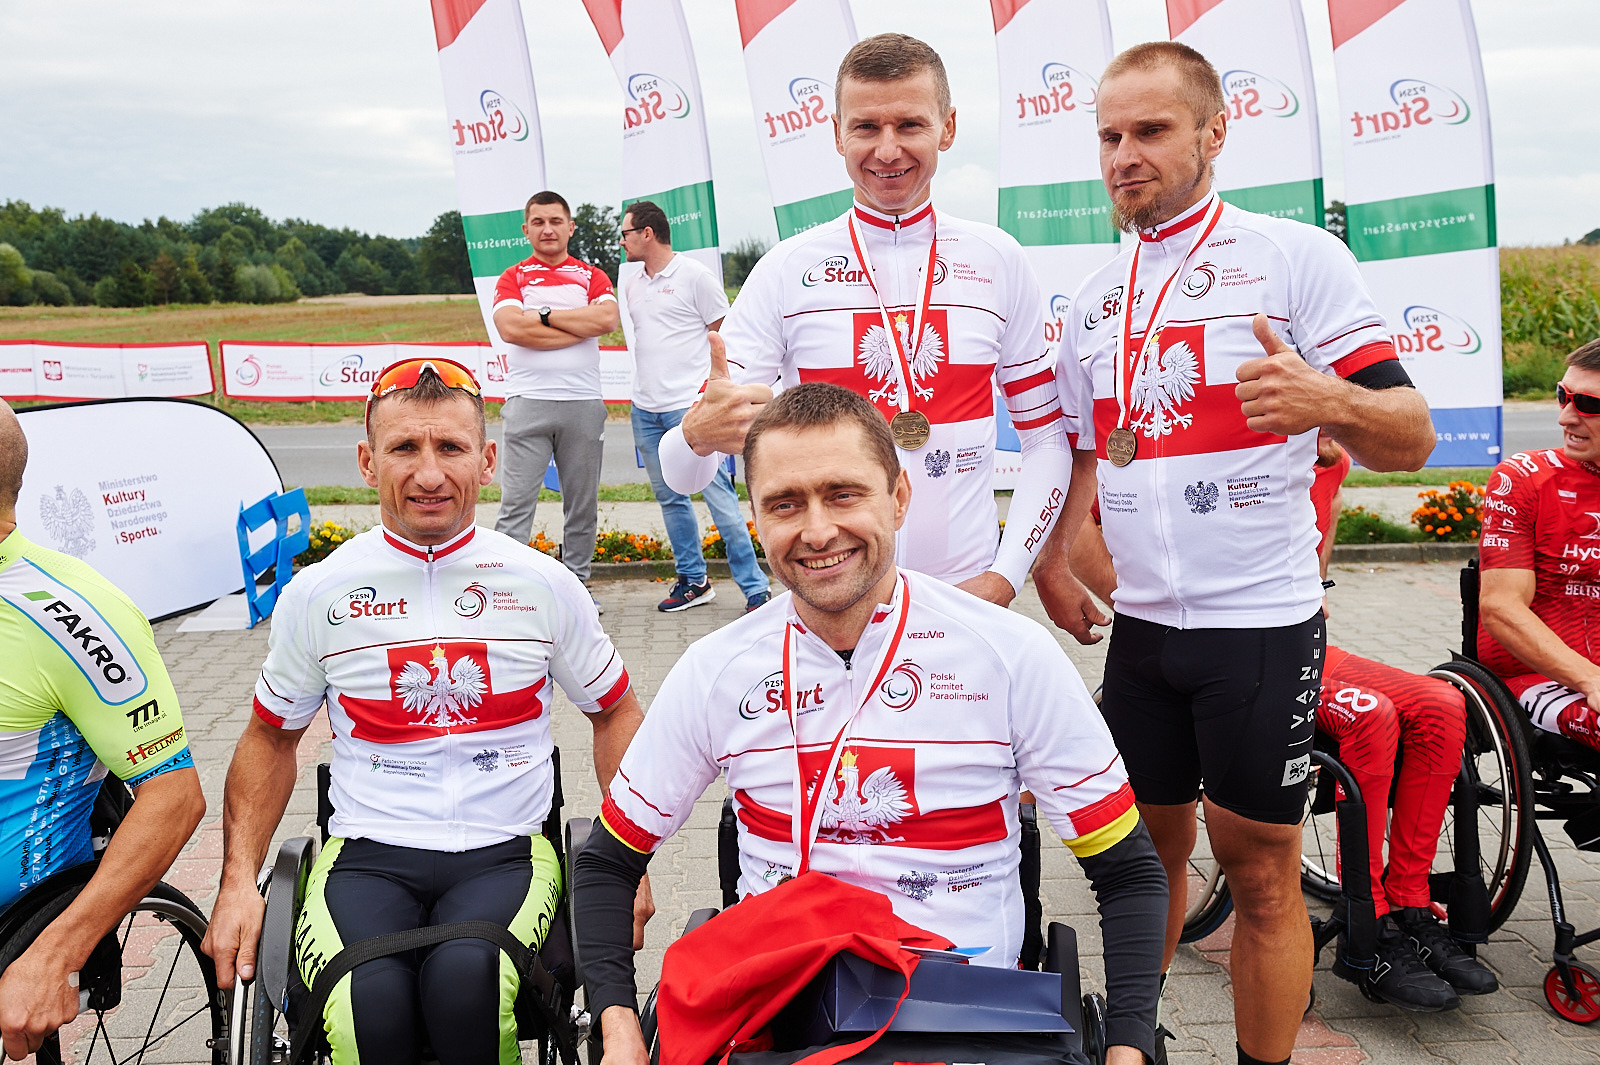 XIII Mistrzostwa Polski w Para-kolarstwie Szosowym